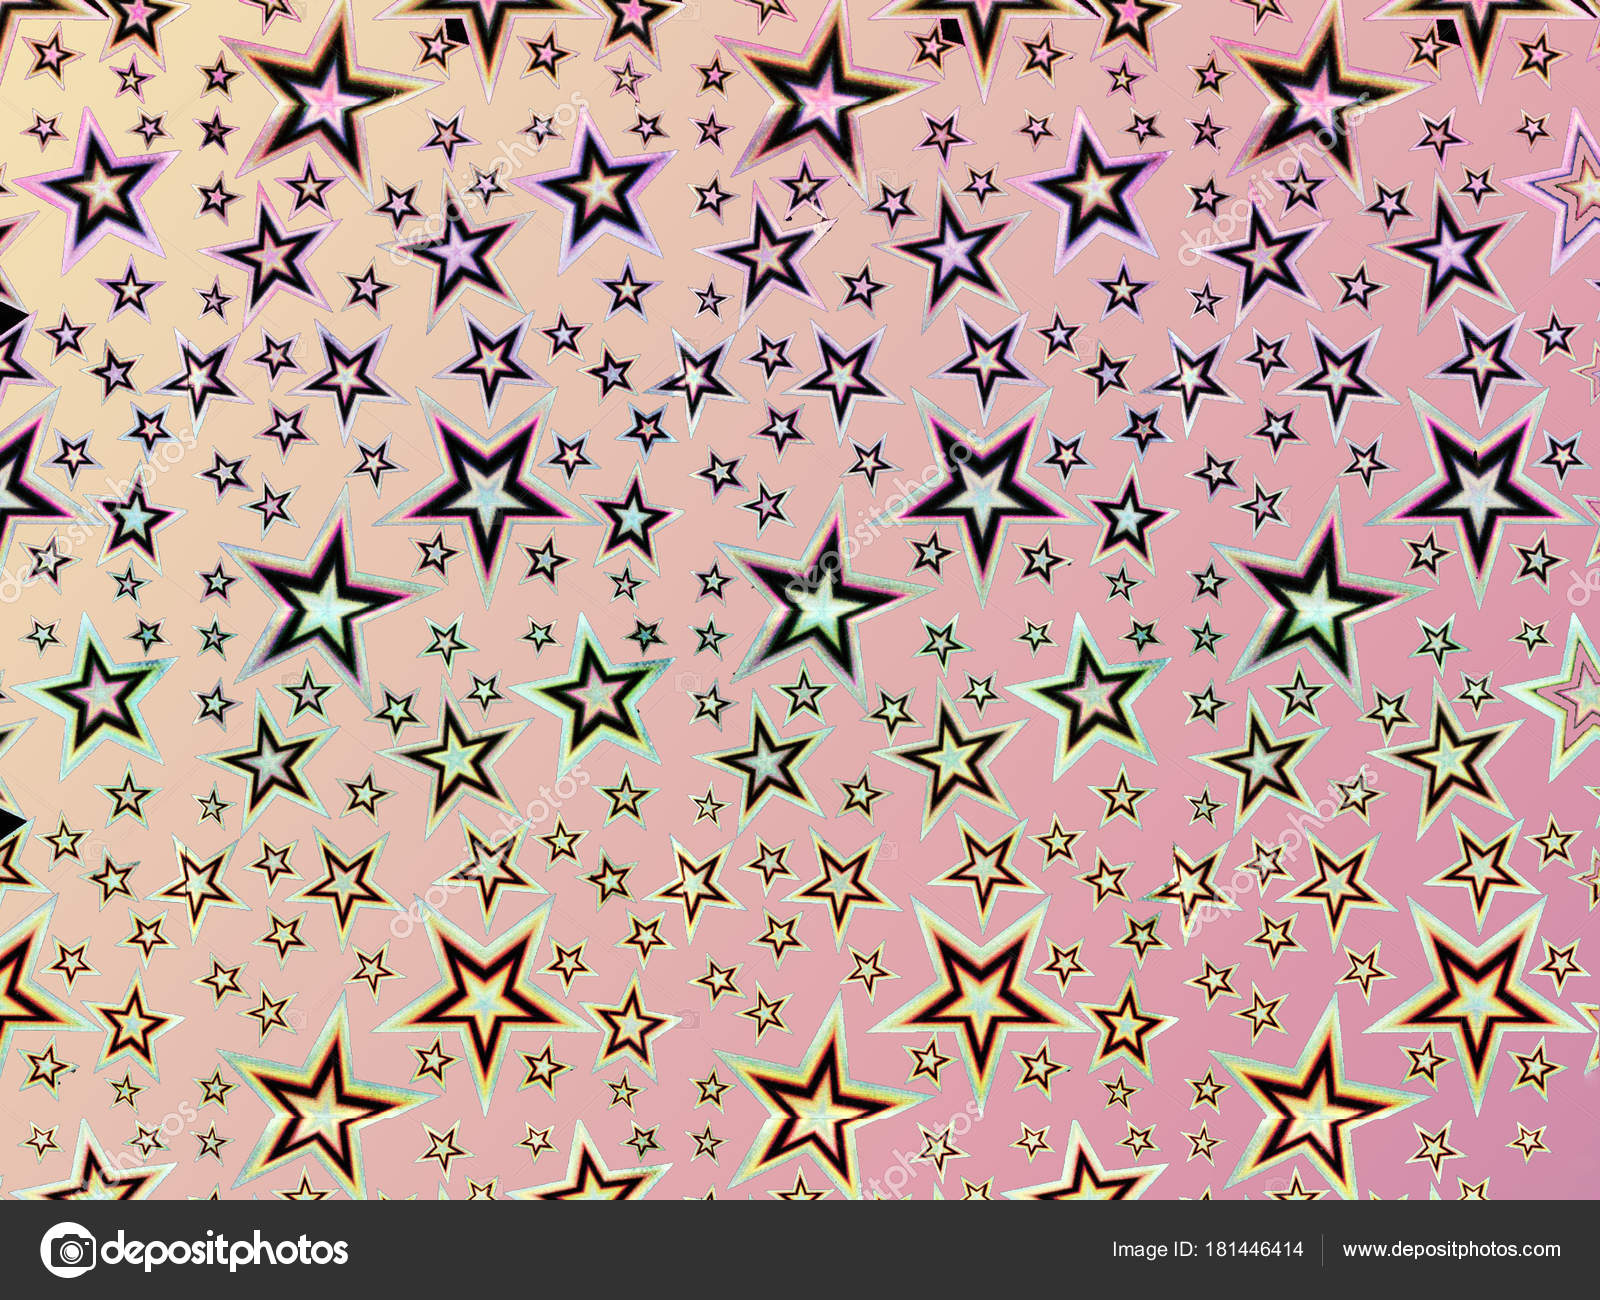 Fondos De Pantalla Estrellas Gratis - 1600x1300 Wallpaper - teahub.io